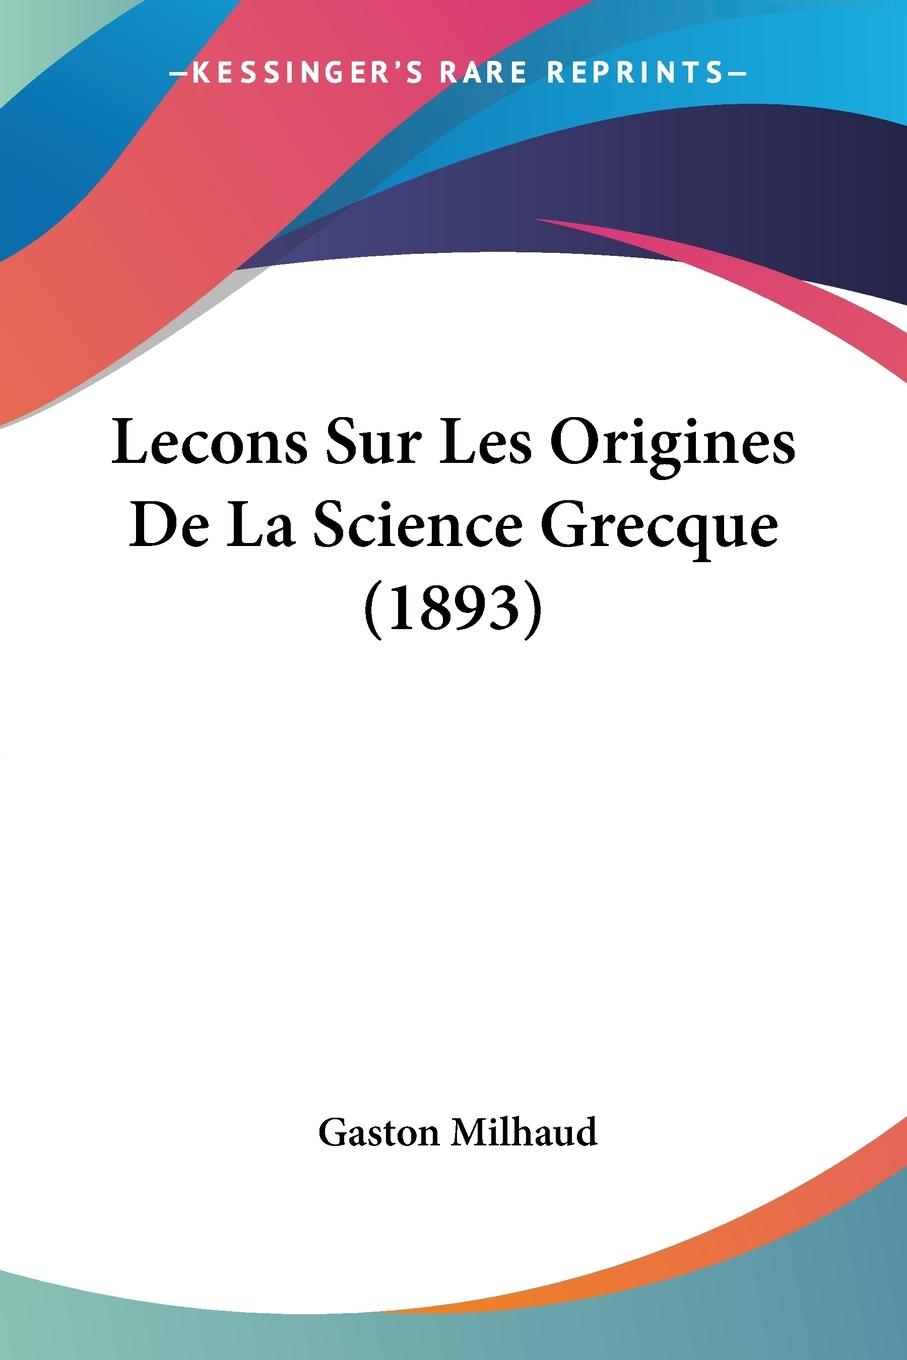 Lecons Sur Les Origines De La Science Grecque (1893) - Milhaud, Gaston